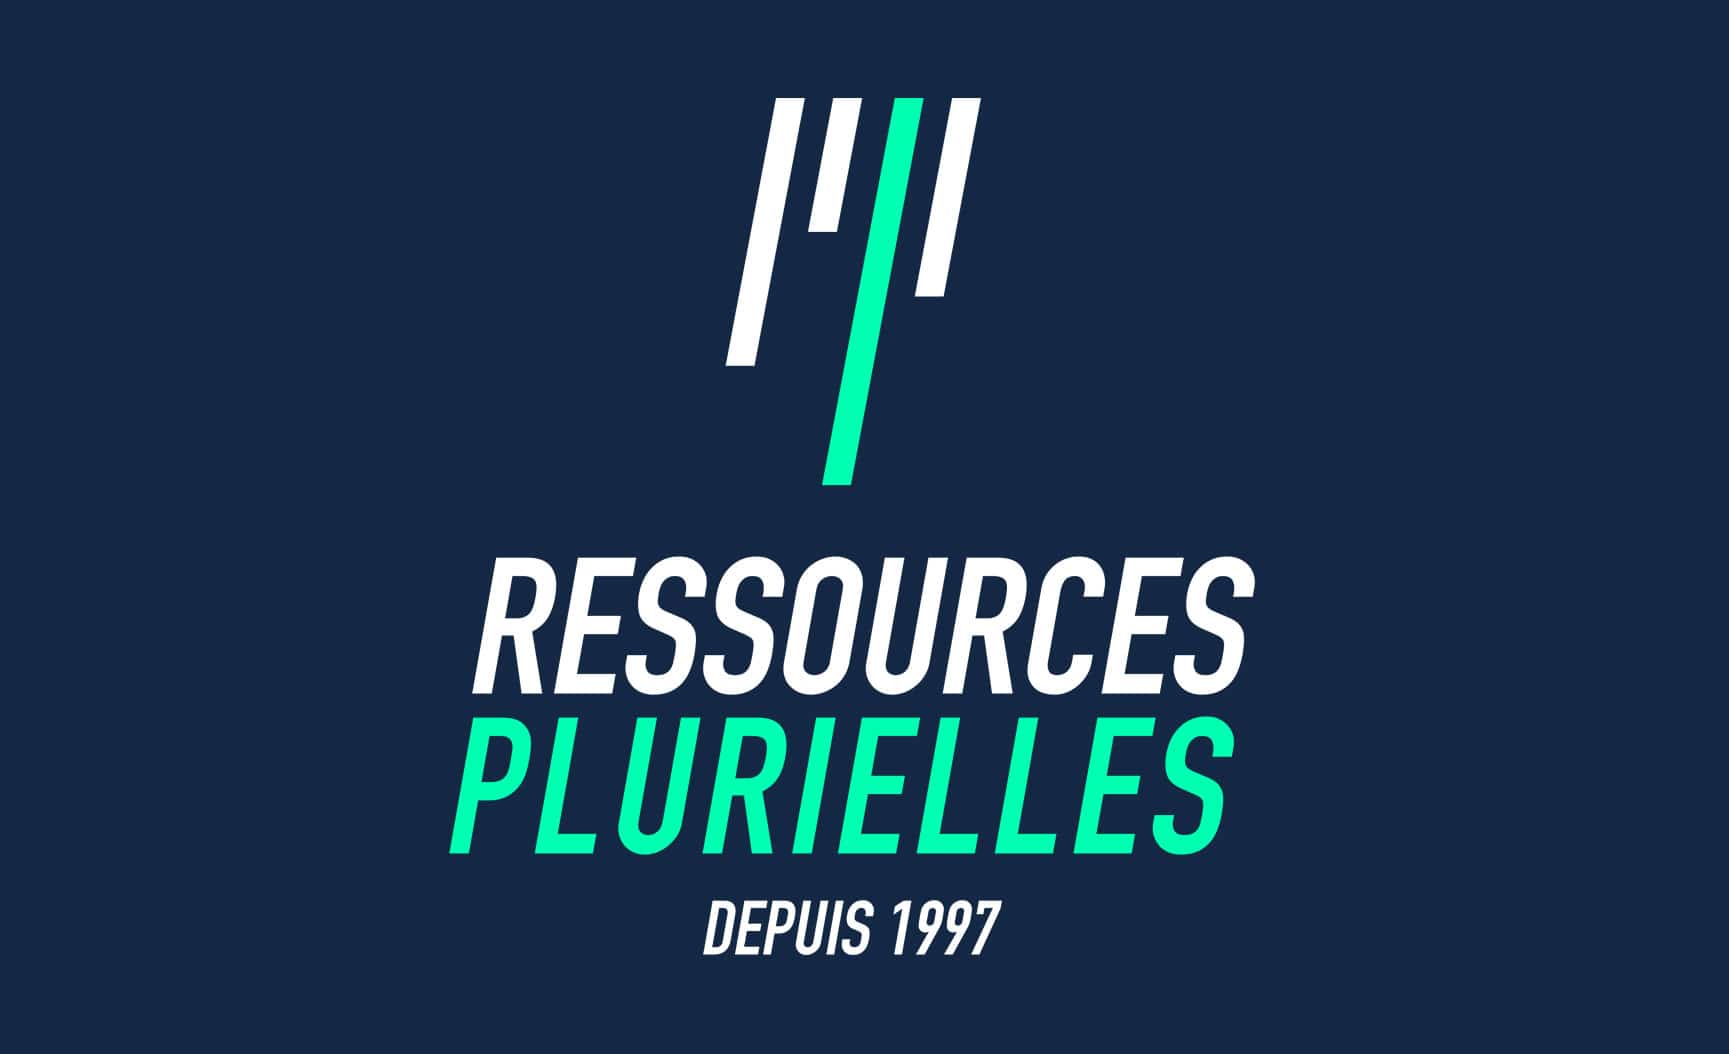 logo rp 1997 - ressources plurielles